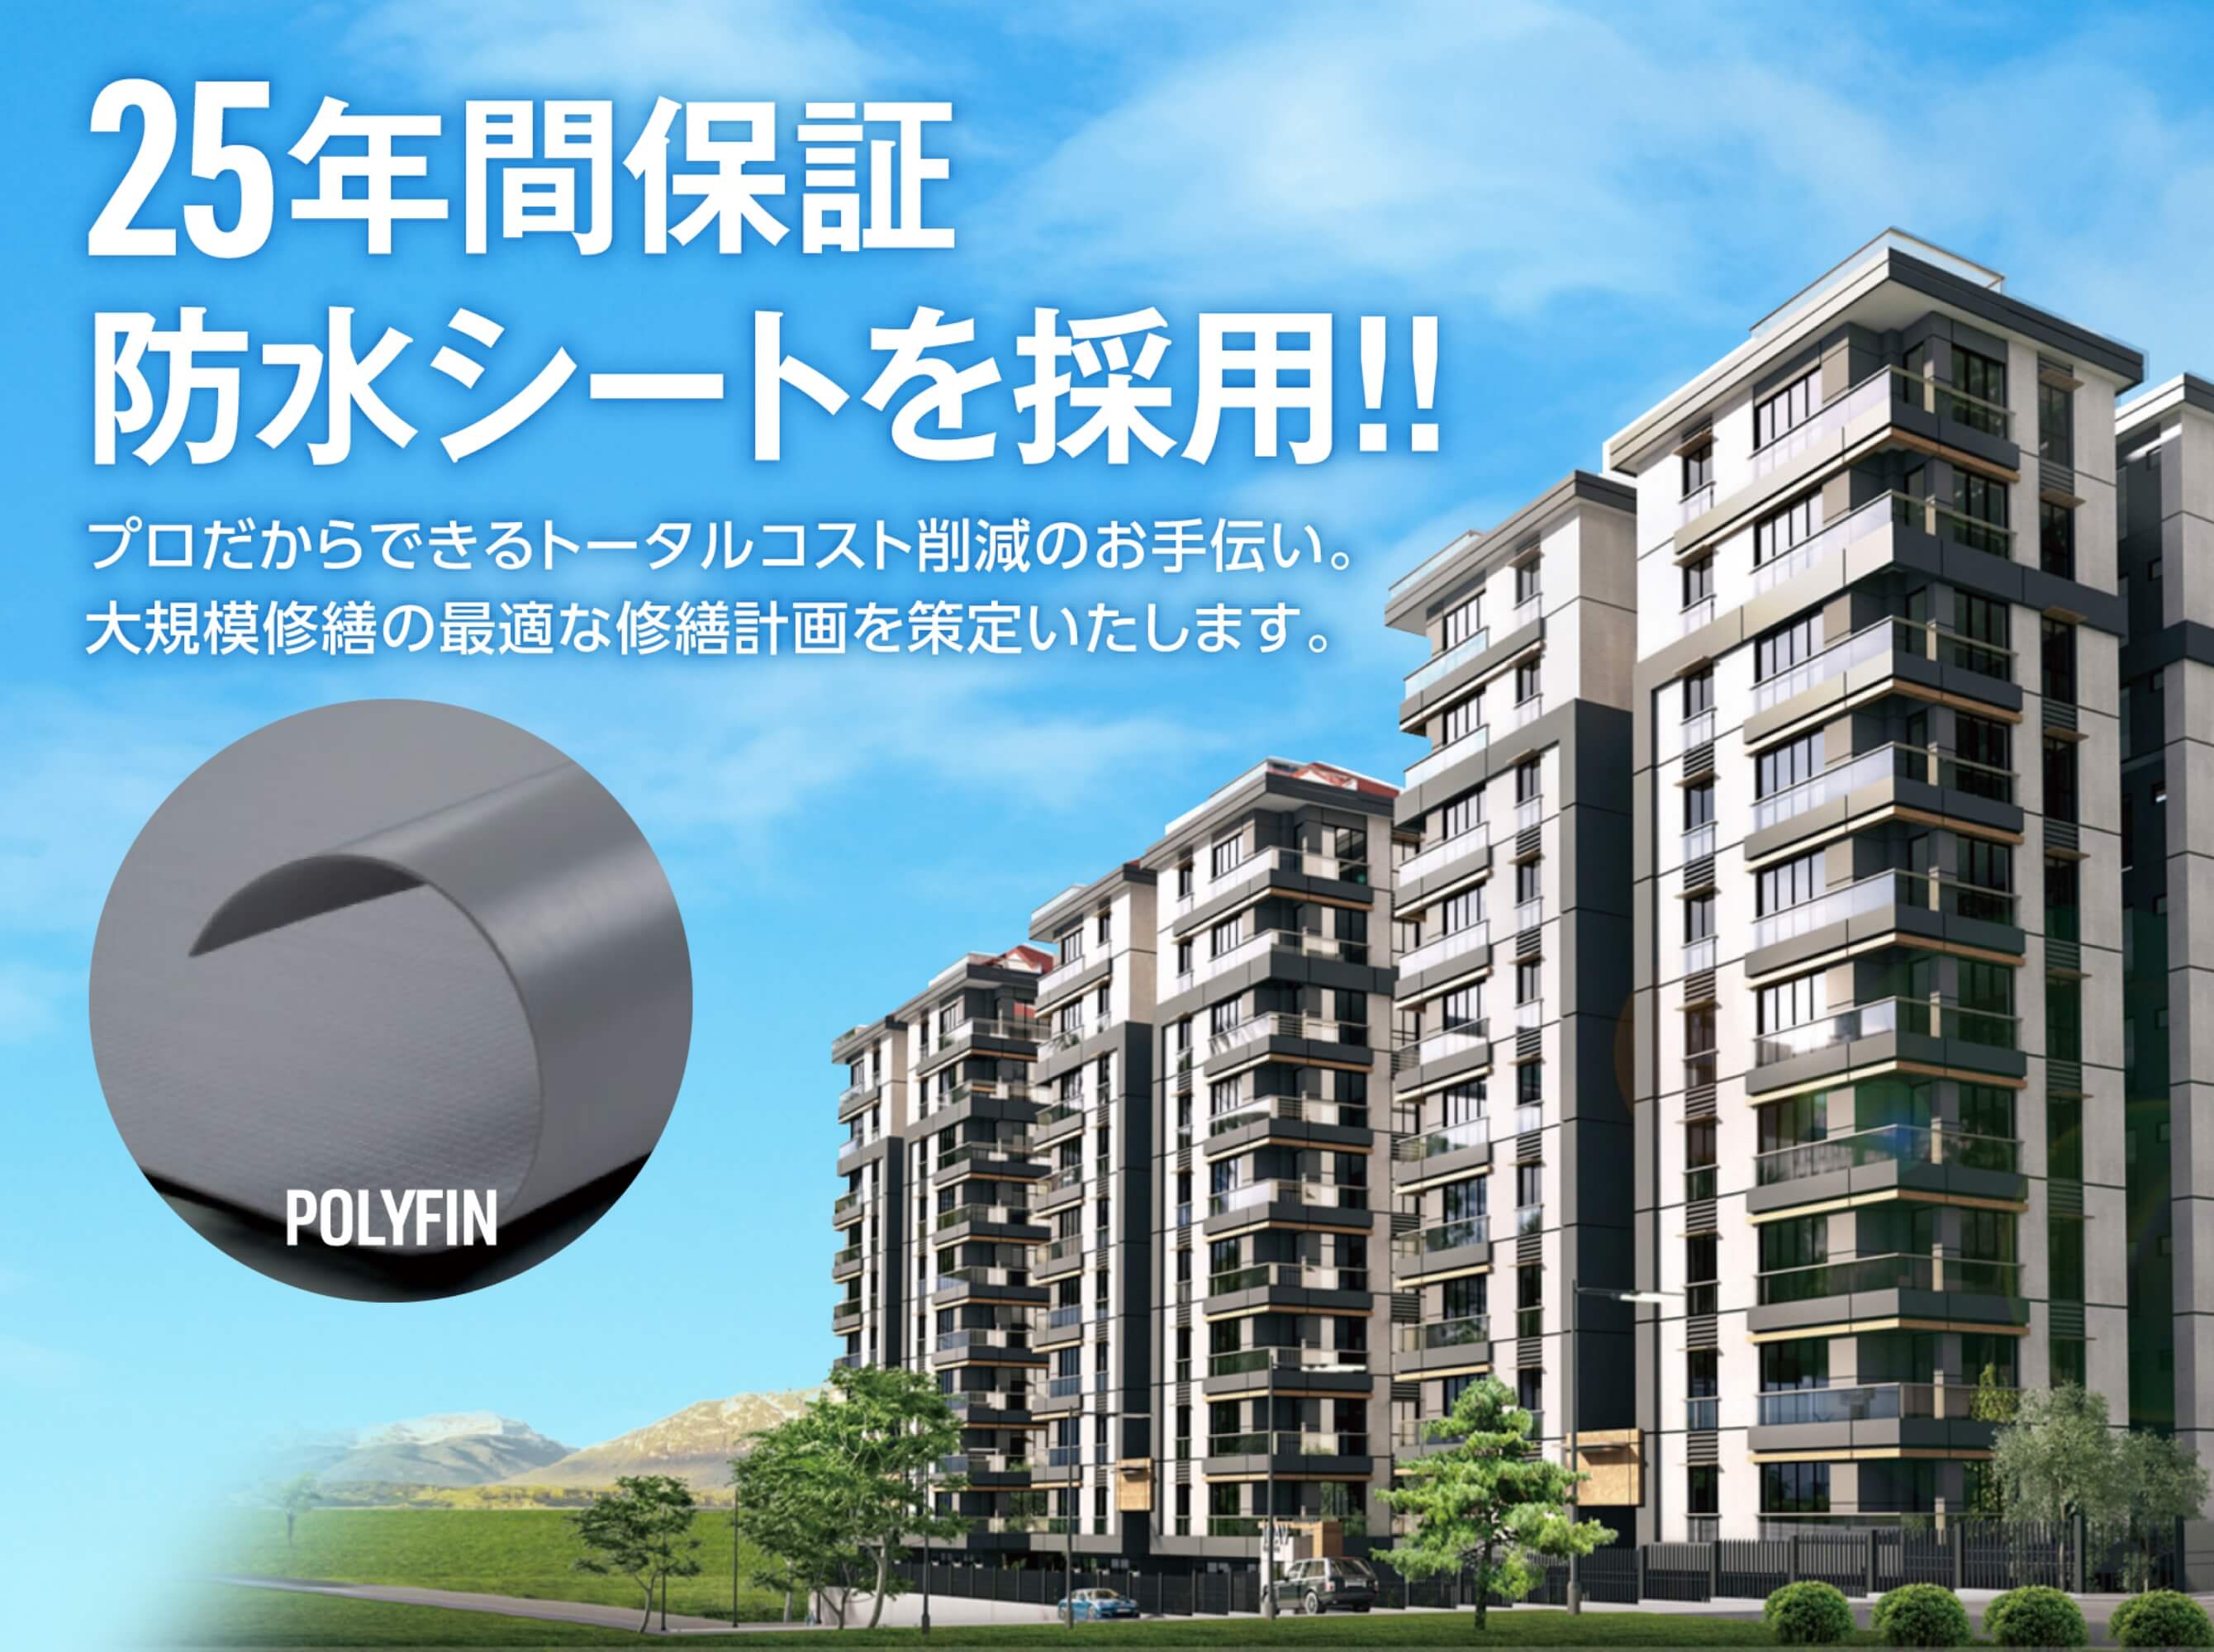 株式会社ニチエイは、富山県で唯一『POLYFIN（25年間保証防水シート）』を取り扱っています。